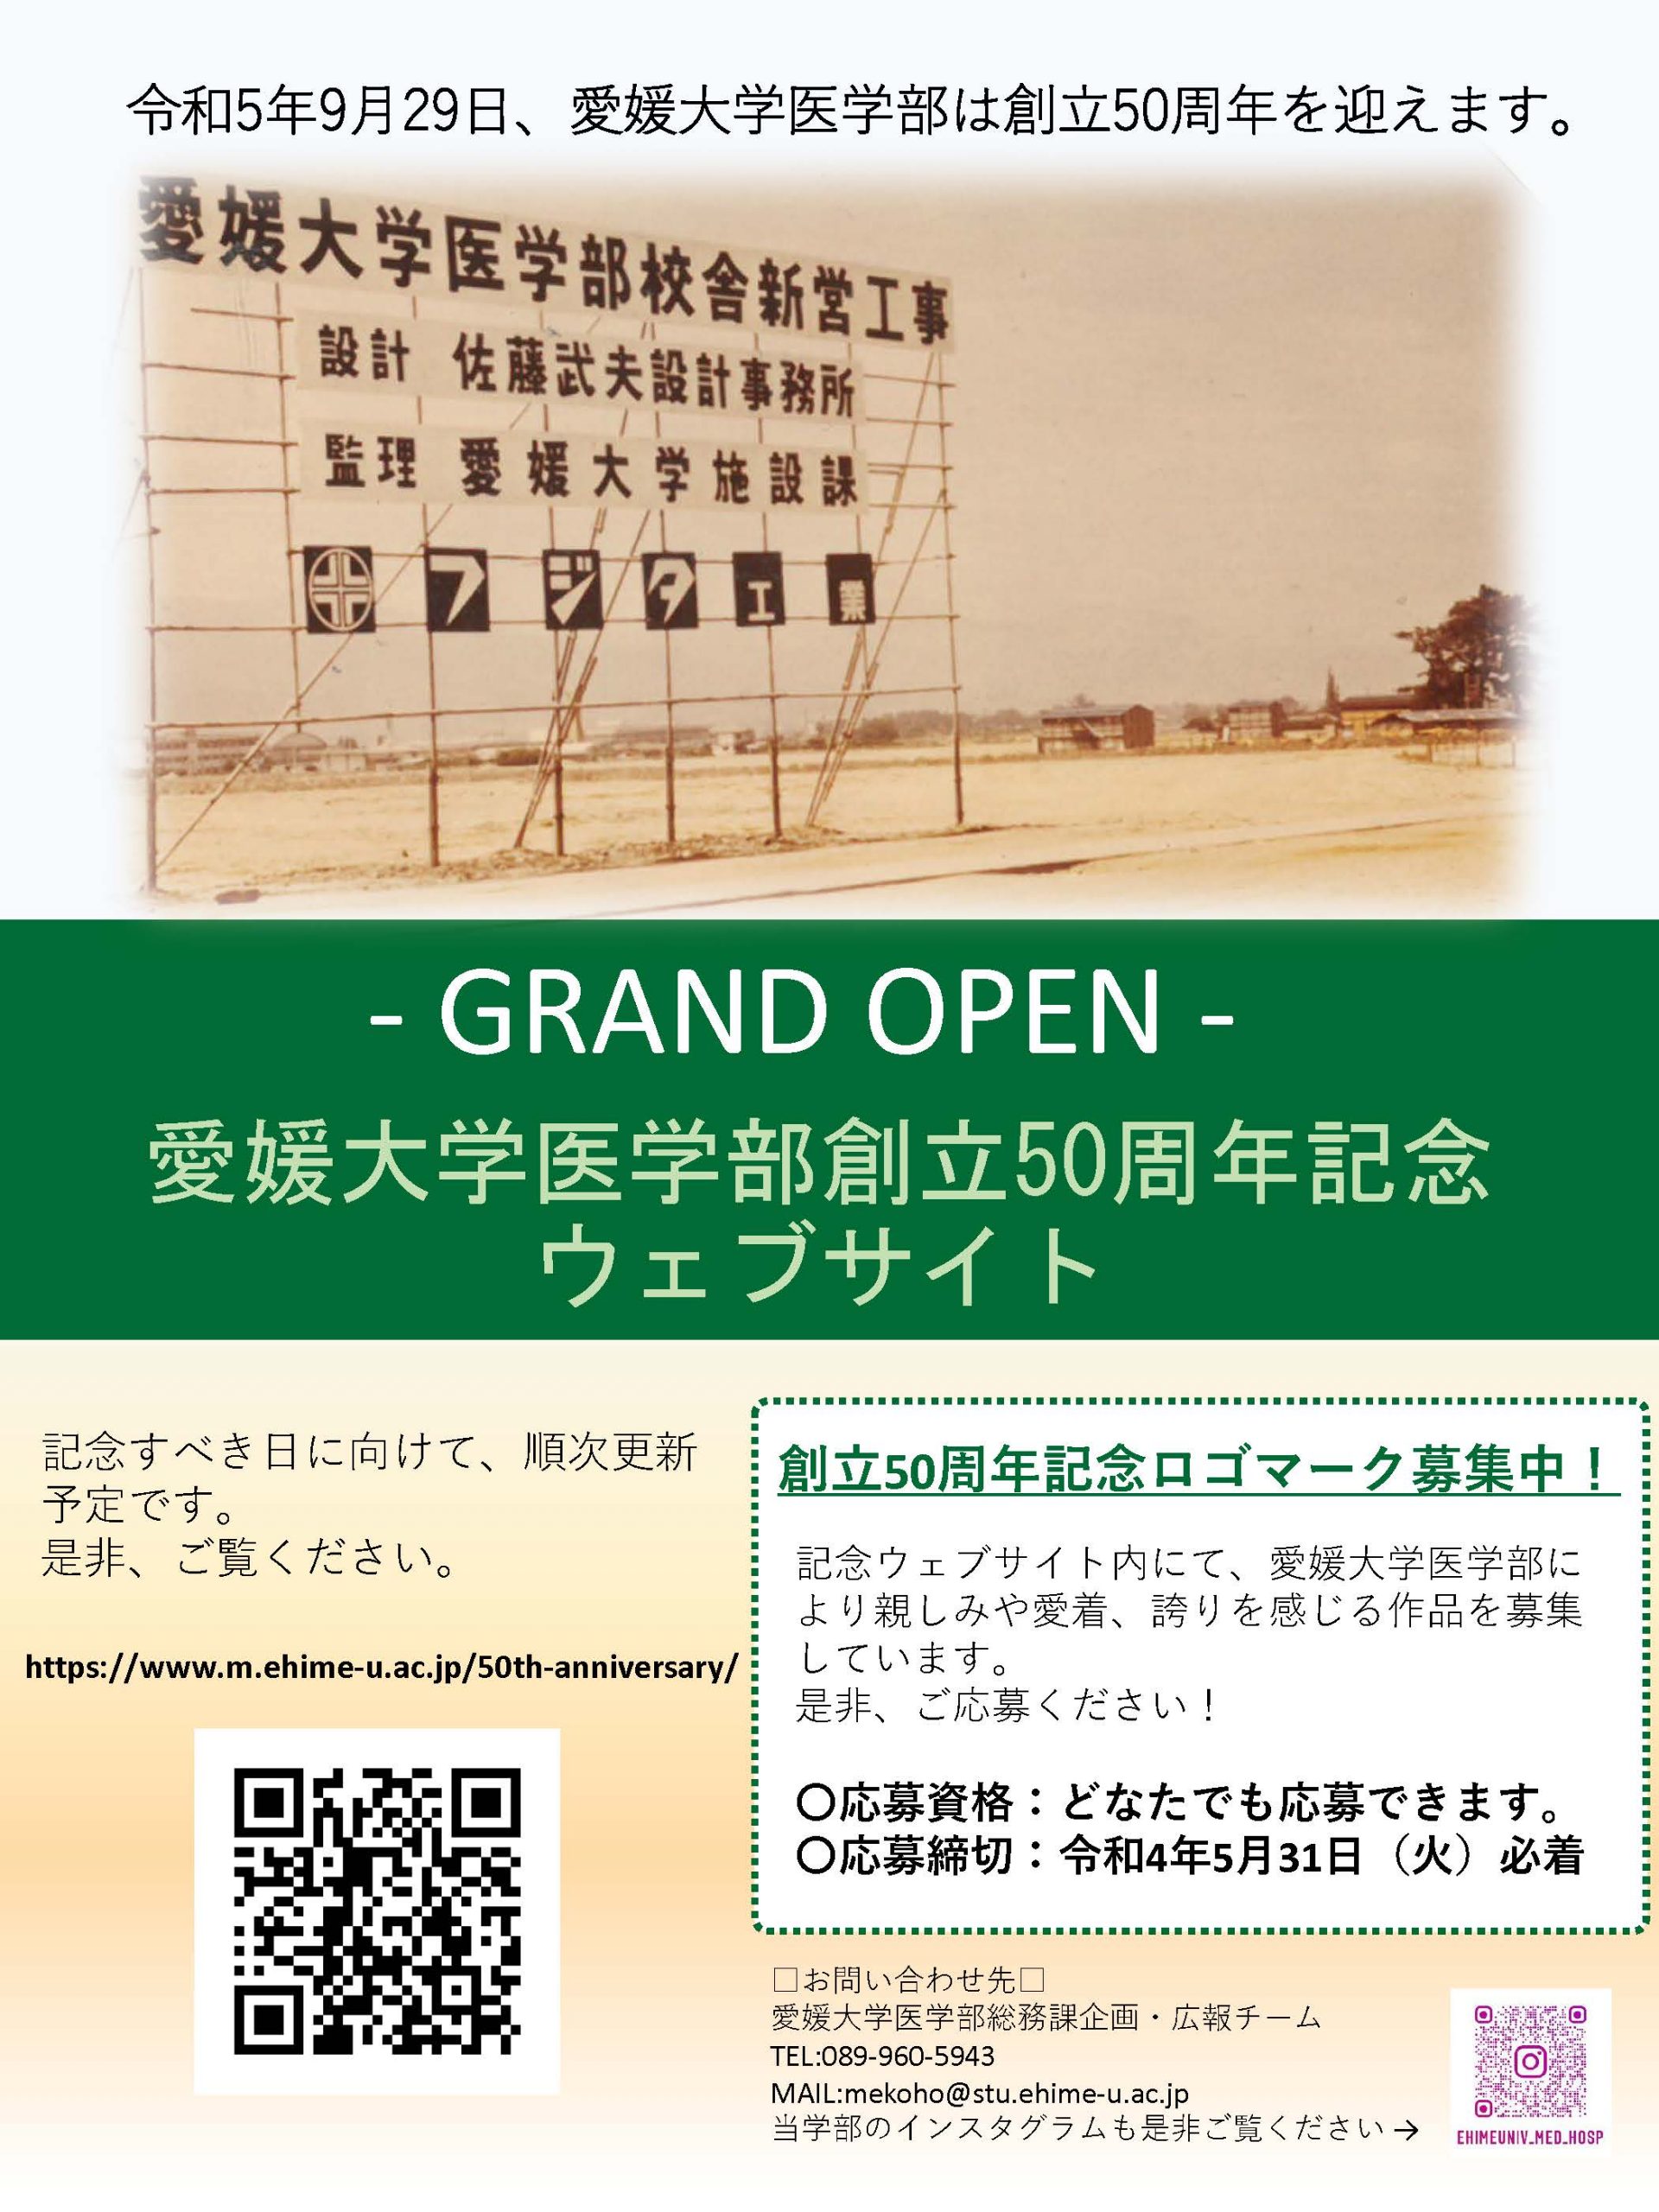 愛媛大学医学部創立50周年記念ウェブサイト開設のお知らせ